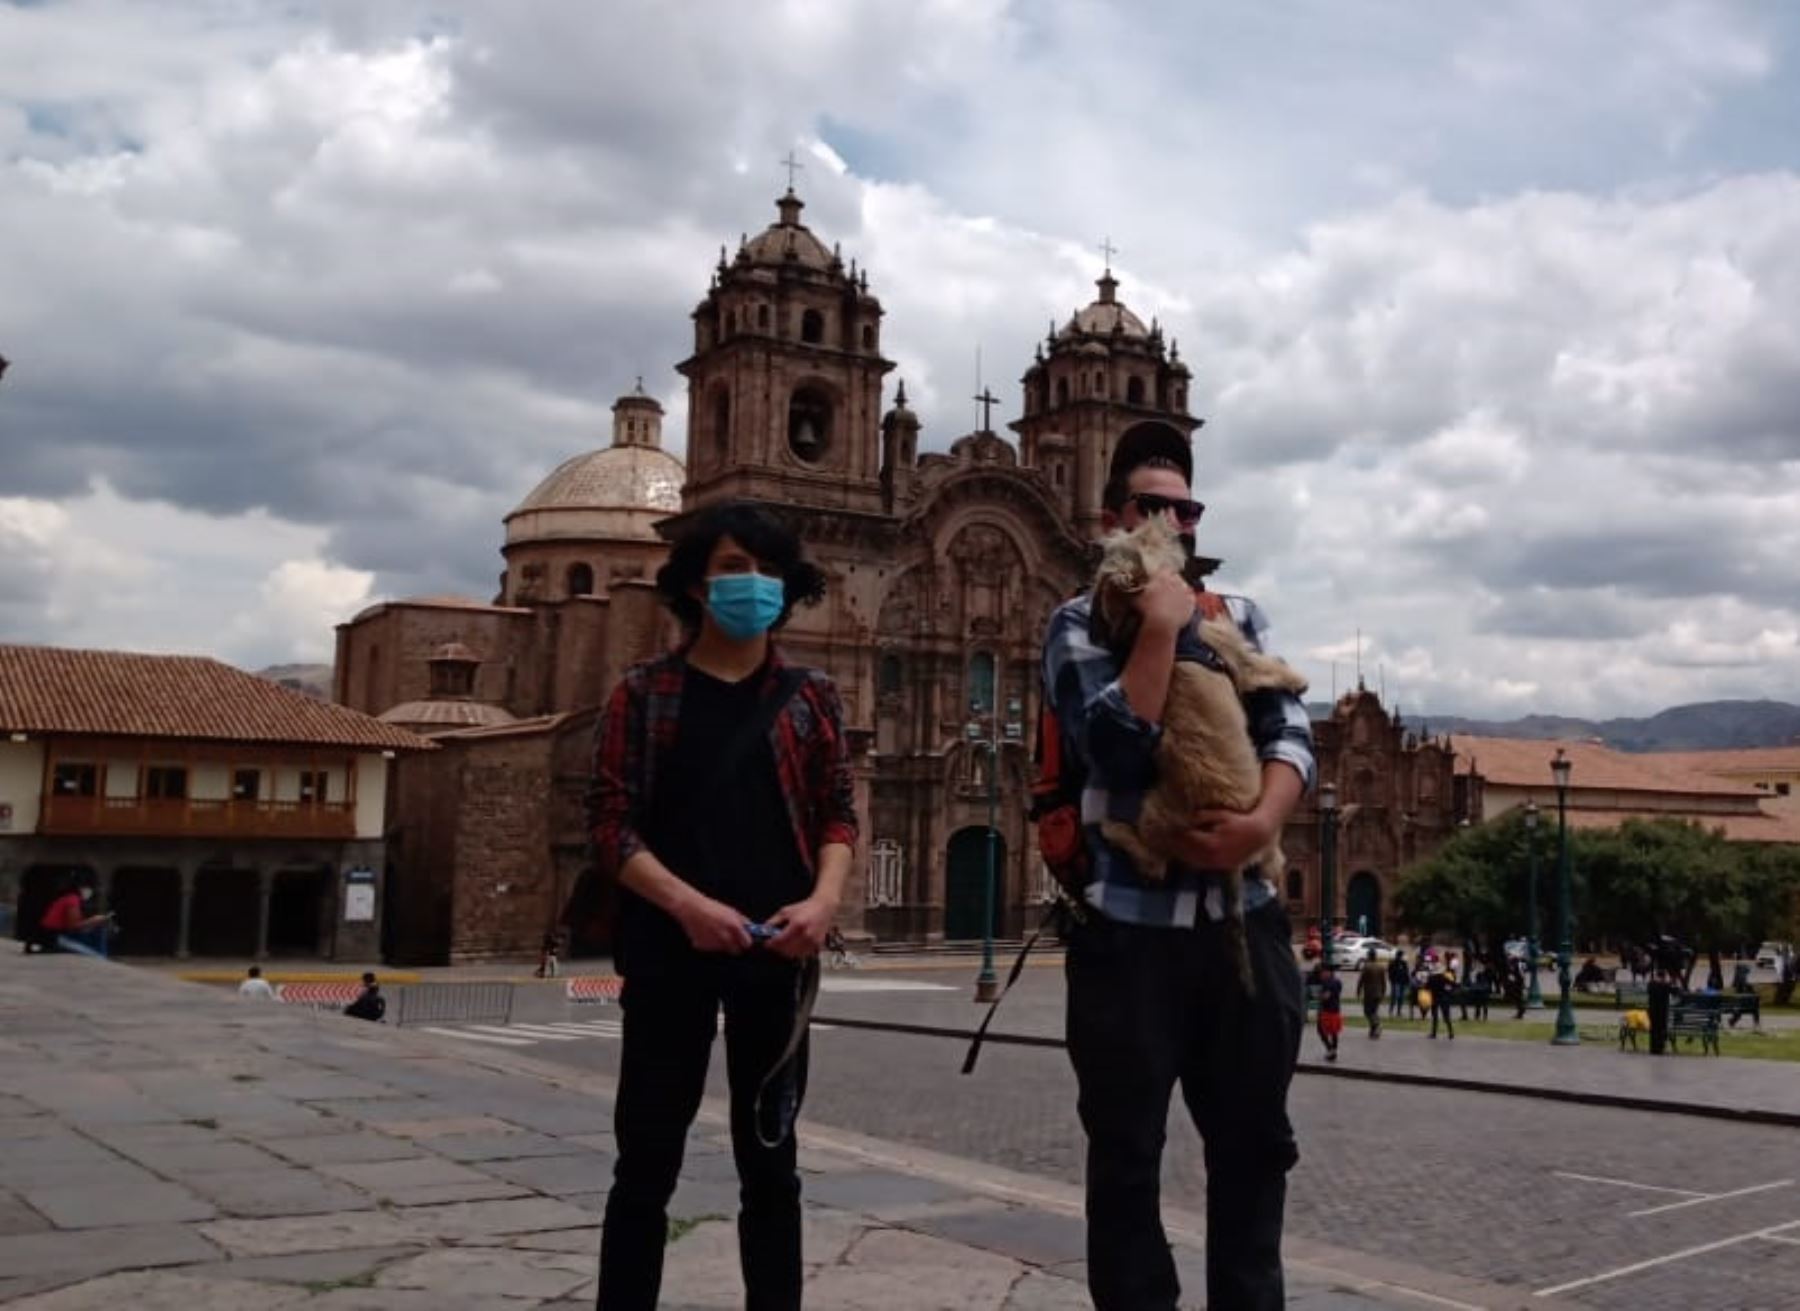 Dos turistas canadienses que se encuentran varados en Cusco desde el inicio de la pandemia de covid-19 sueñan con conocer Machu Picchu antes de retornar a su país. ANDINA/Percy Hurtado